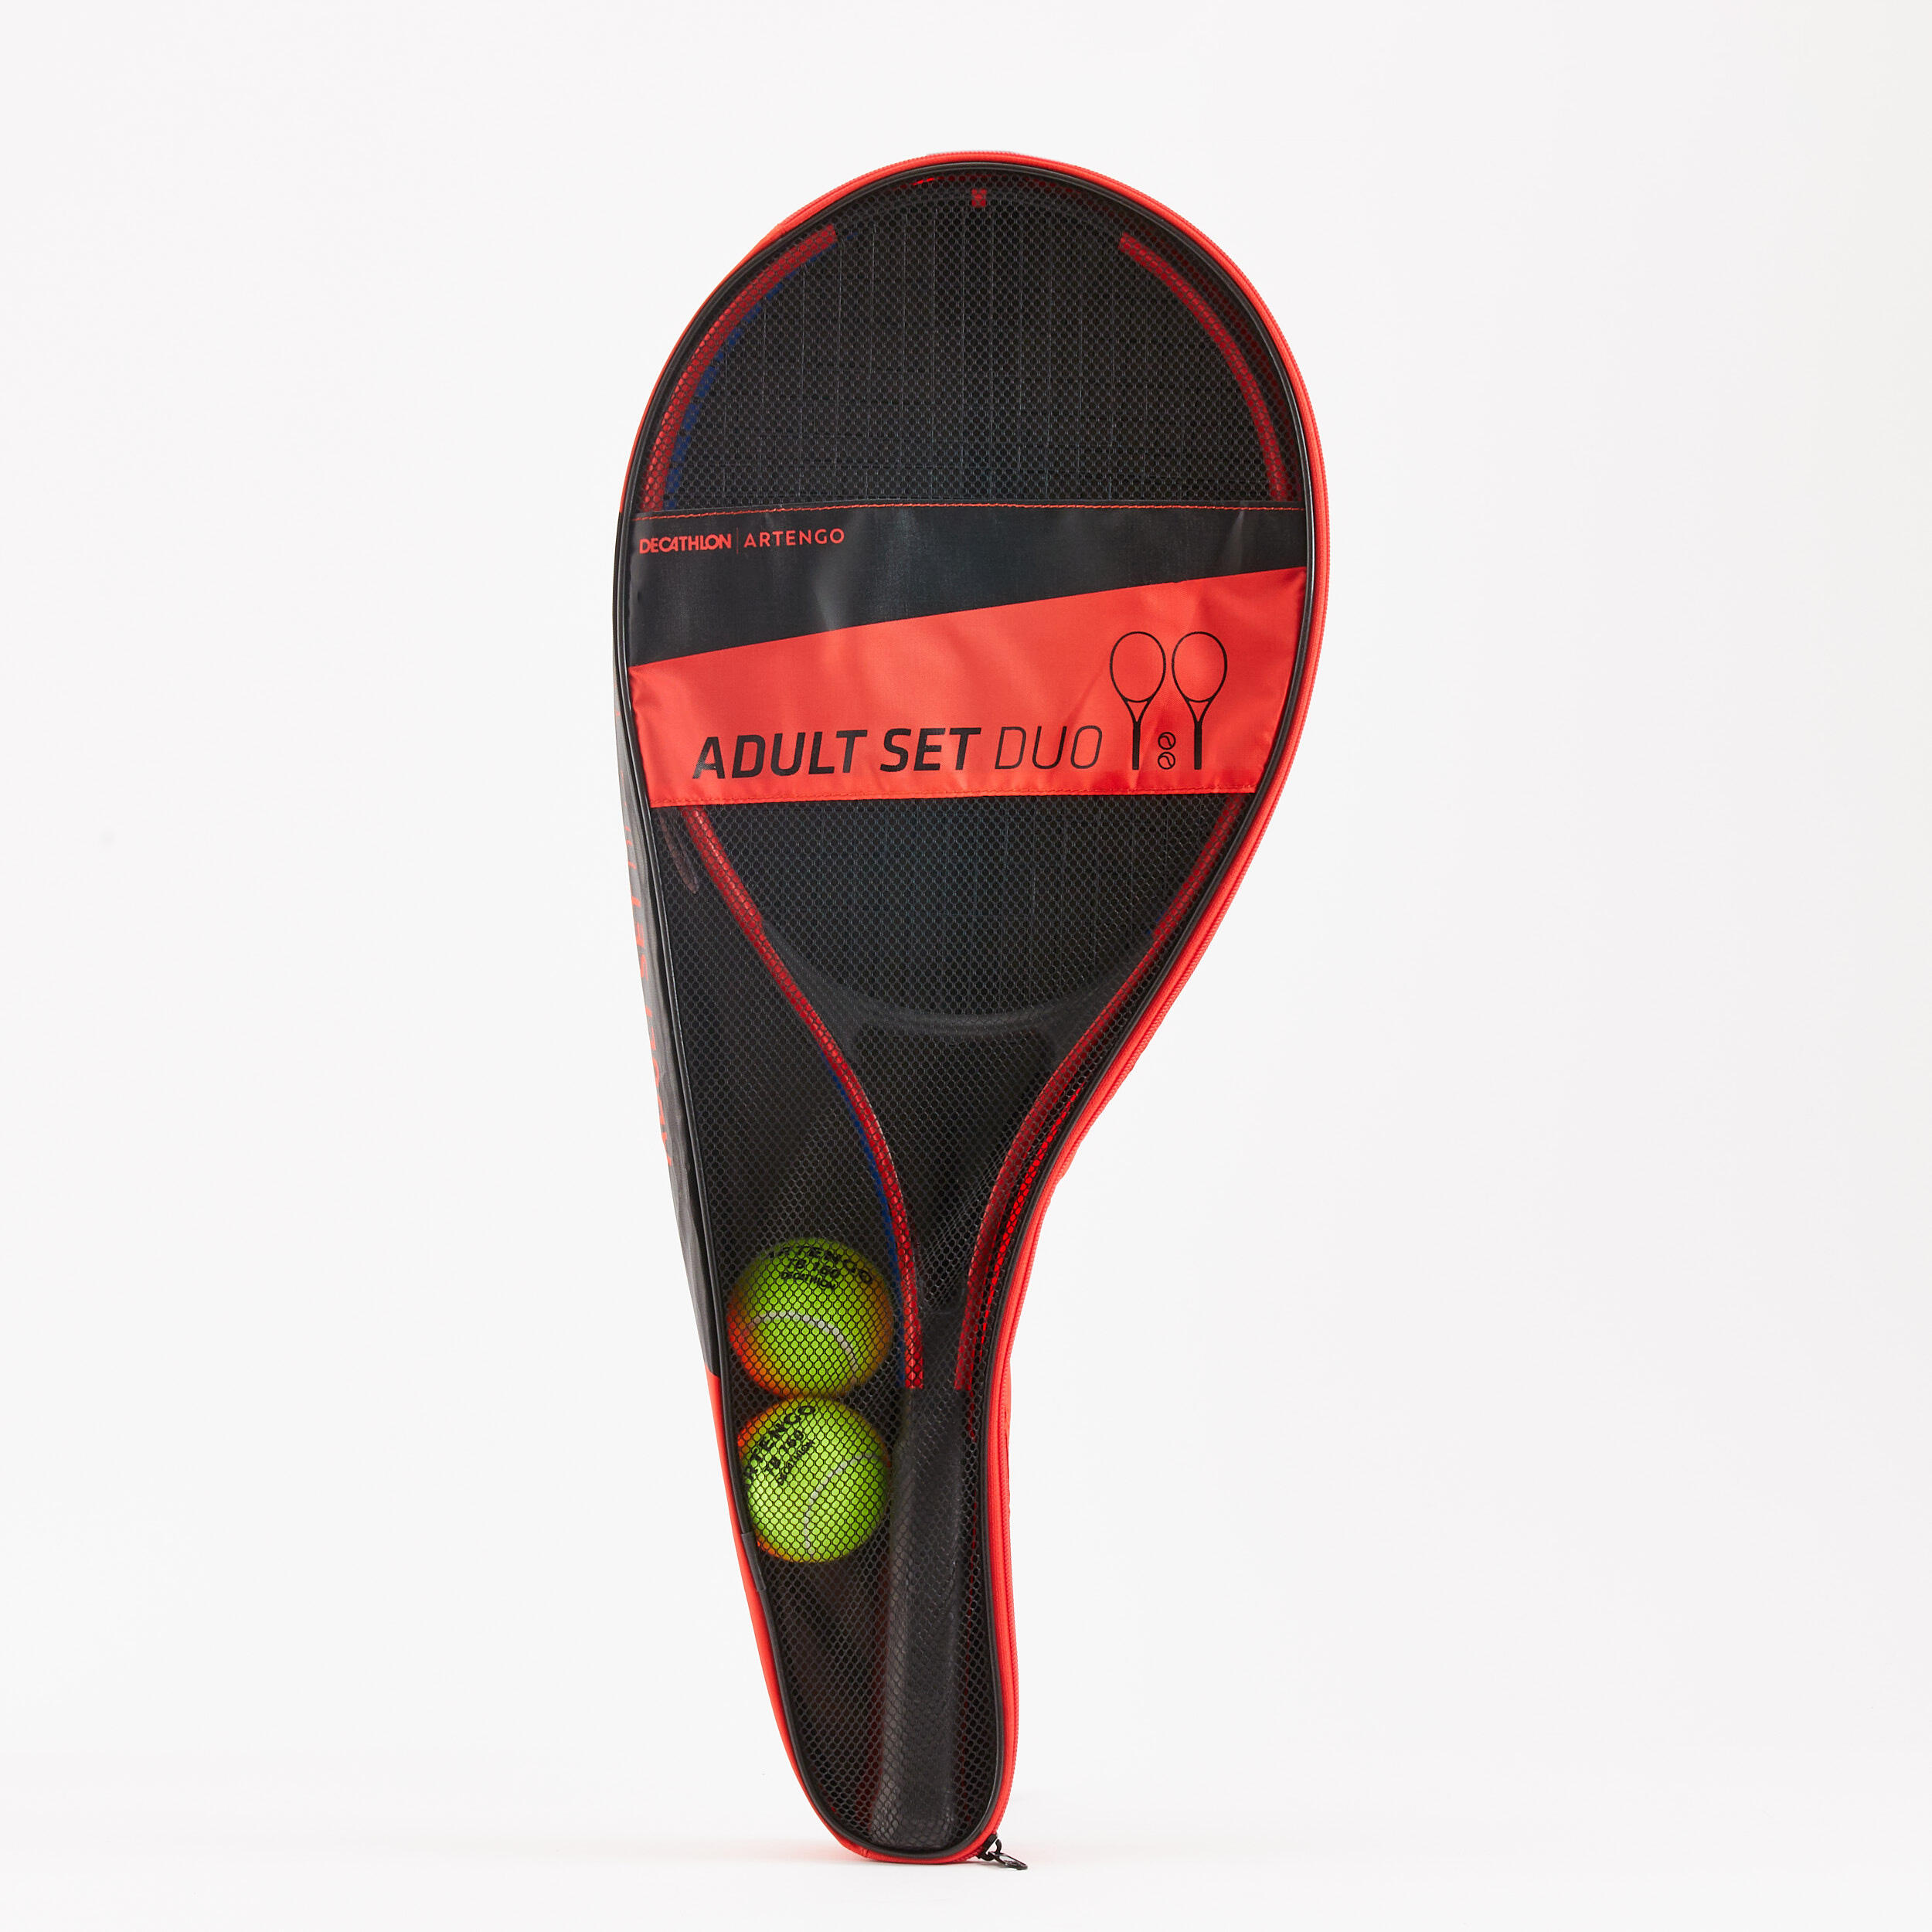 Set de tennis duo (2 raquettes, 2 balles, 1 housse) - ARTENGO